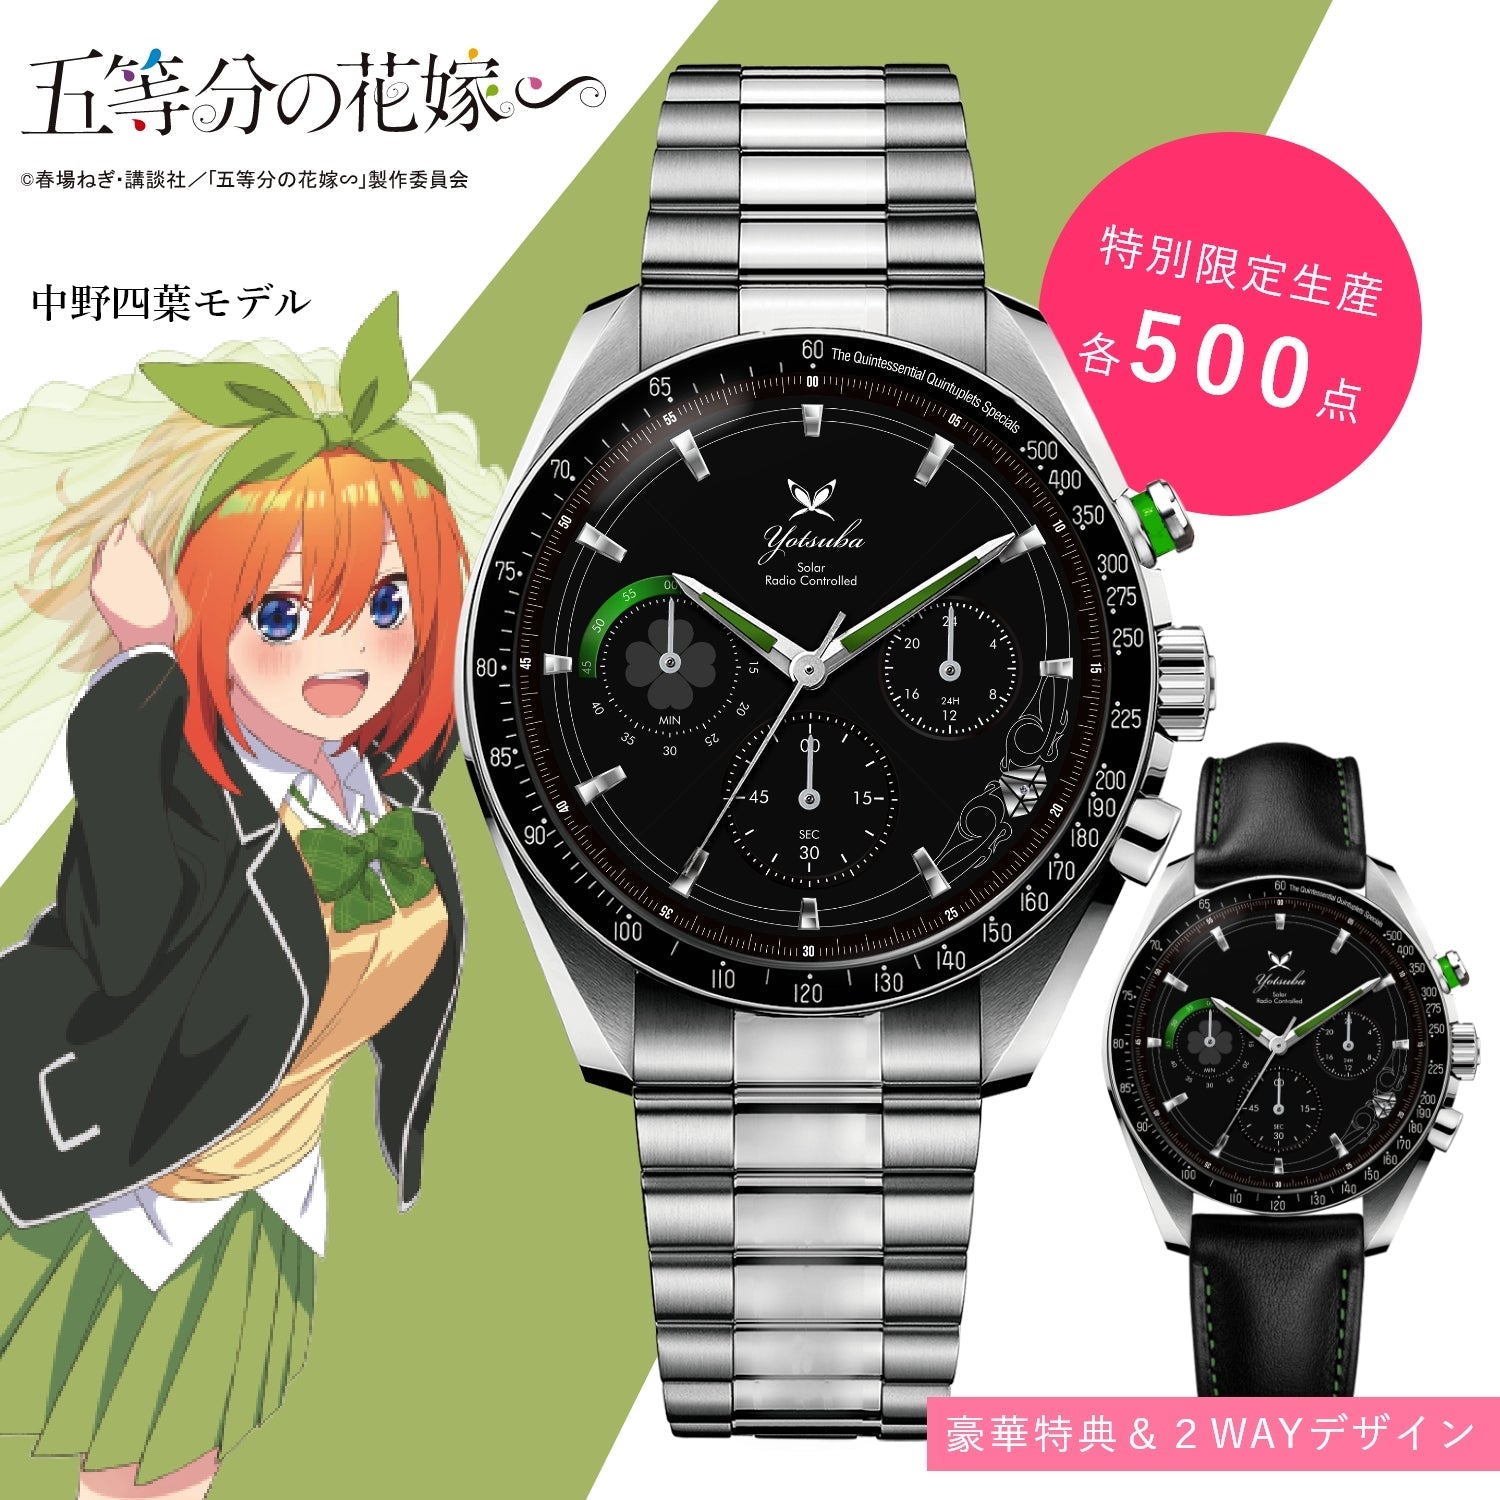 「五等分の花嫁∽」電波ソーラークロノグラフ腕時計| 中野 四葉 - 公式通販サイト「アニメコレクション/Anime Collection」